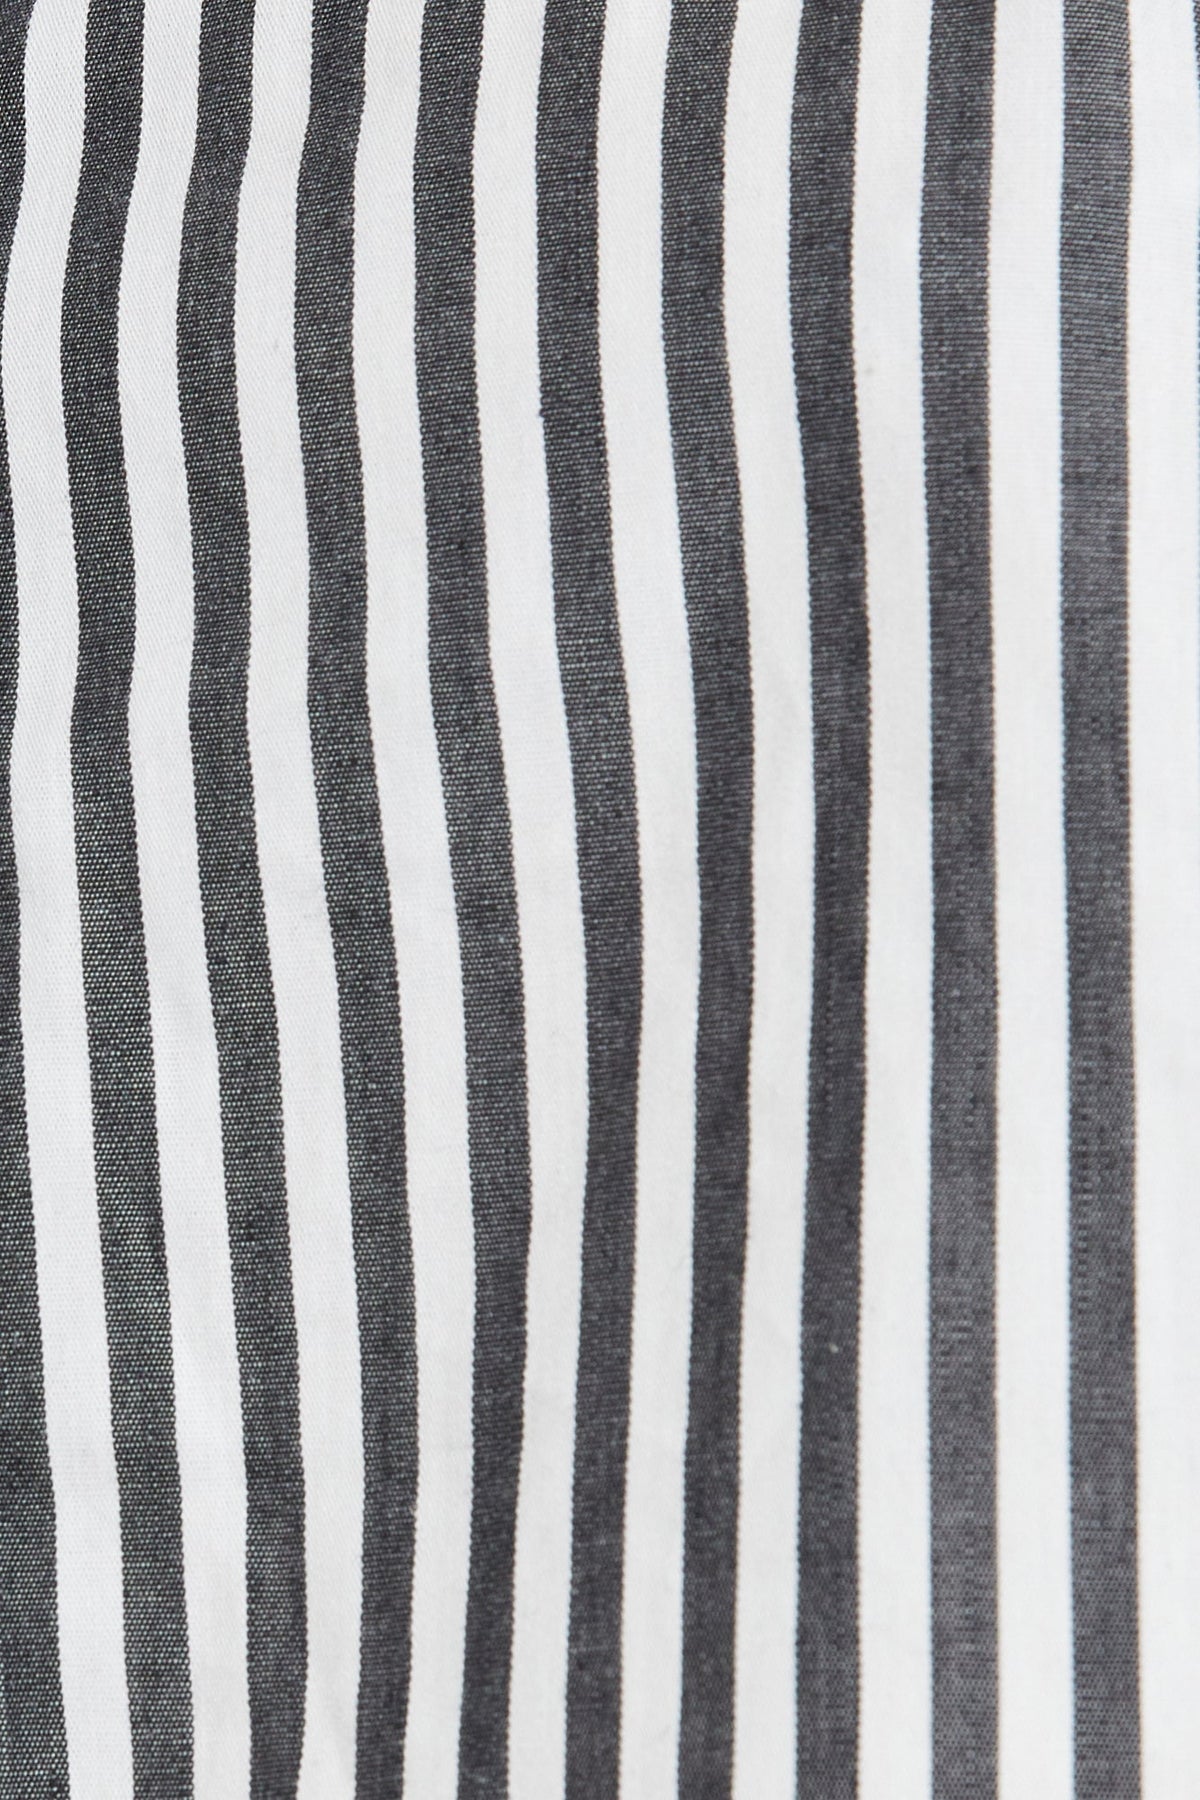 The Franca Stripe Short By GINIA In Black &amp; White Stripe